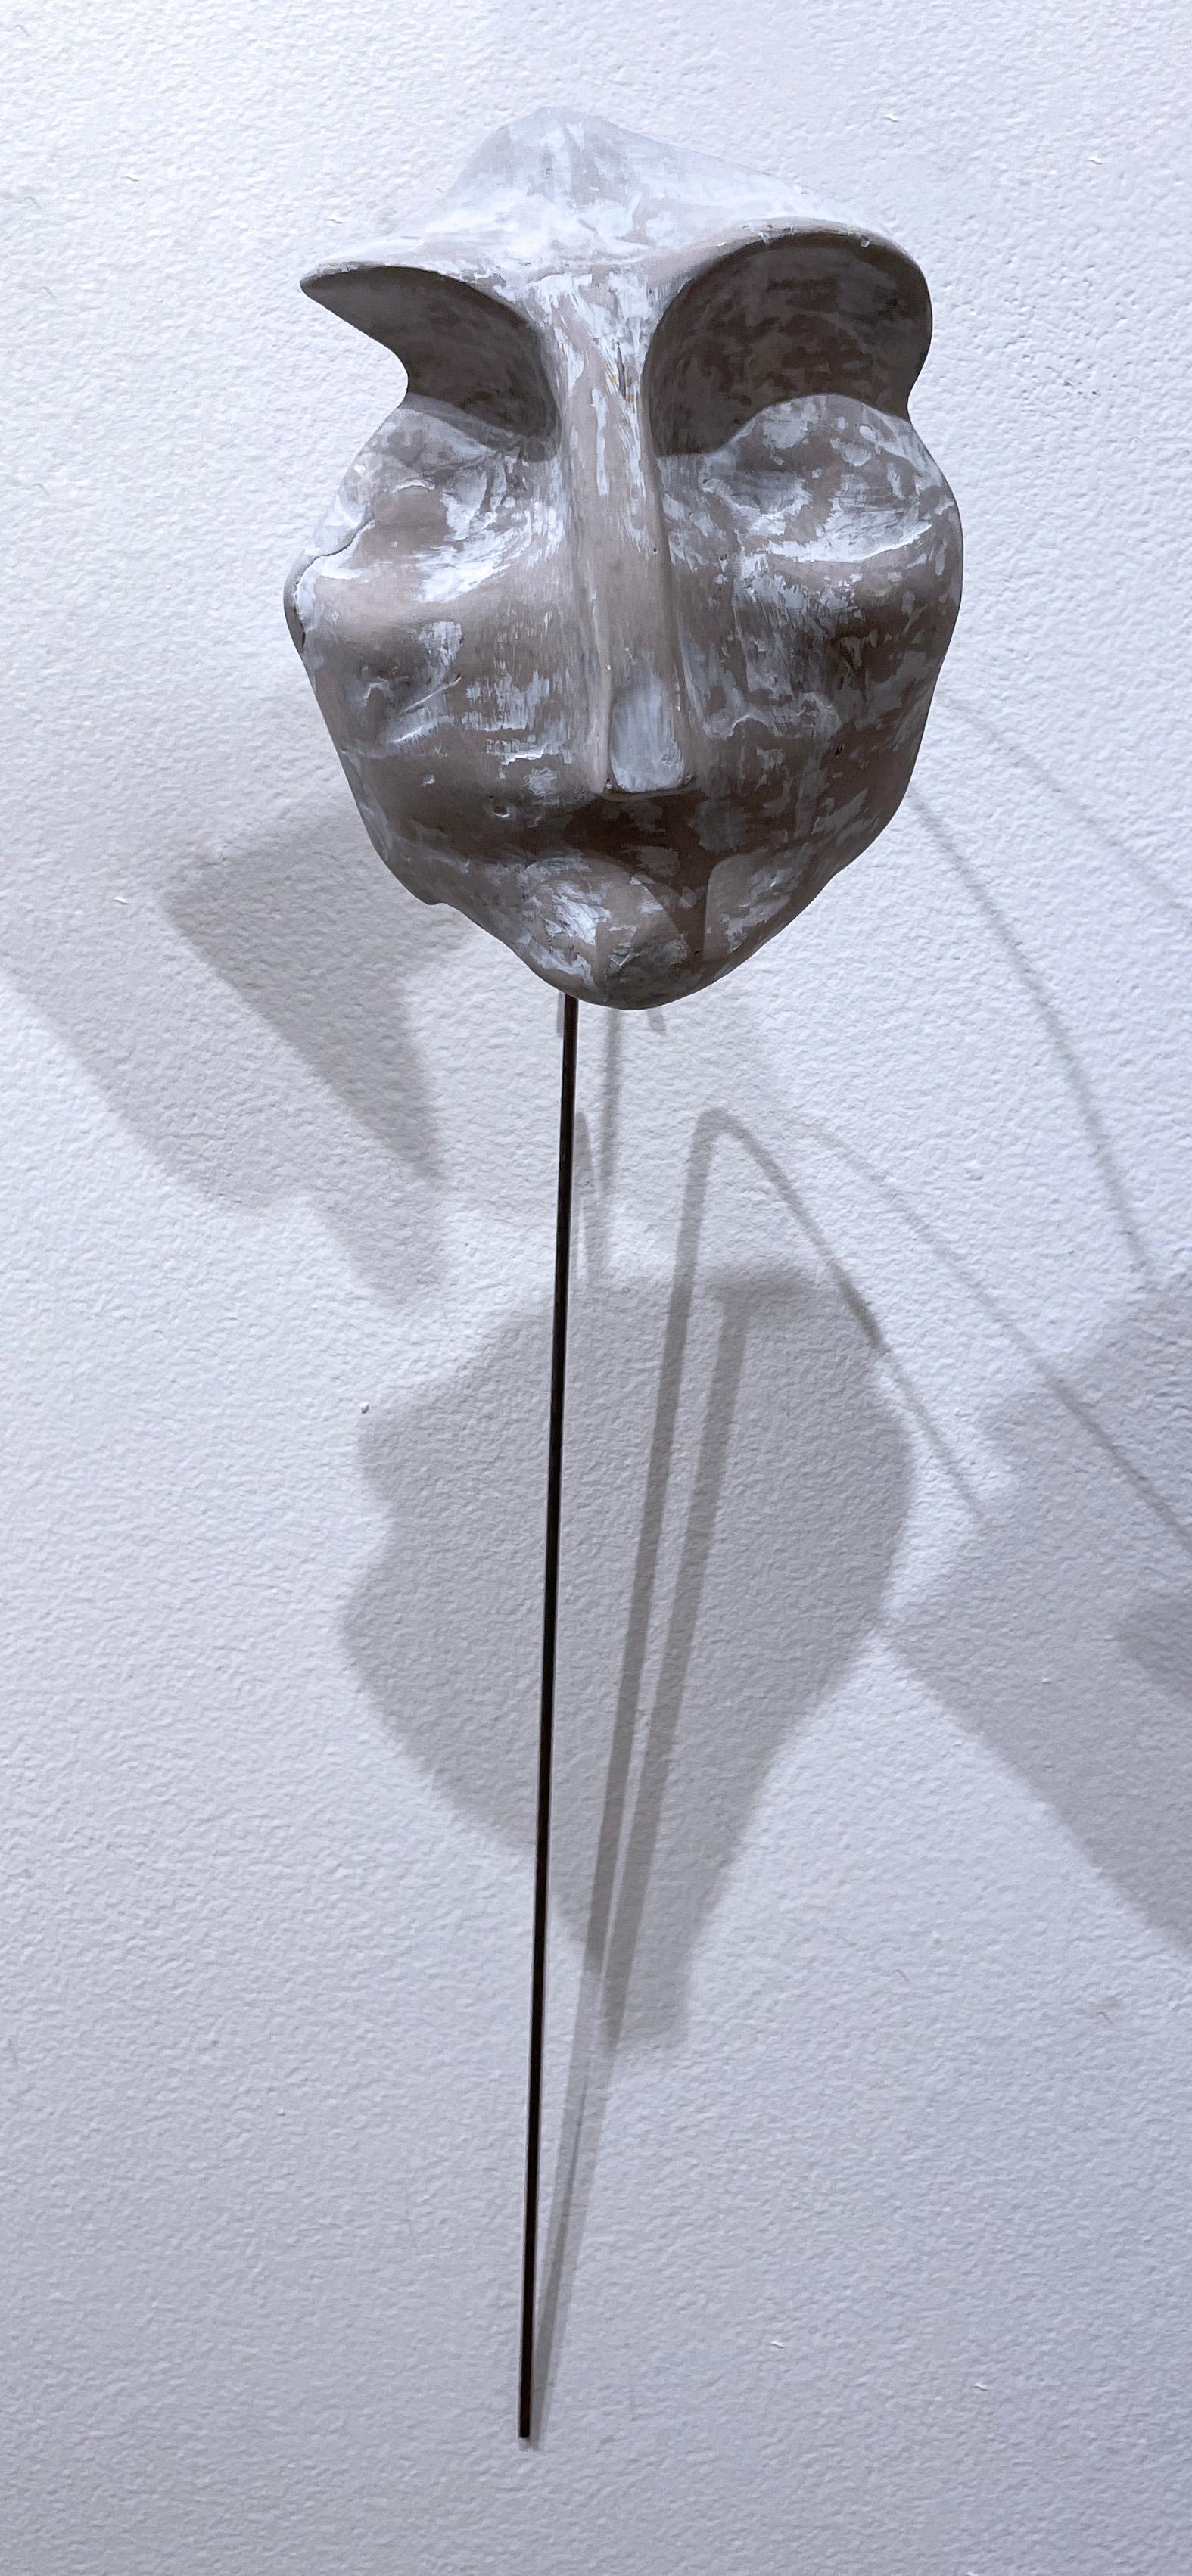 Sage blanchi à la chaux (2022), sculpture de visage en béton blanc gris, fil métallique, terreux - Contemporain Sculpture par Dena Paige Fischer